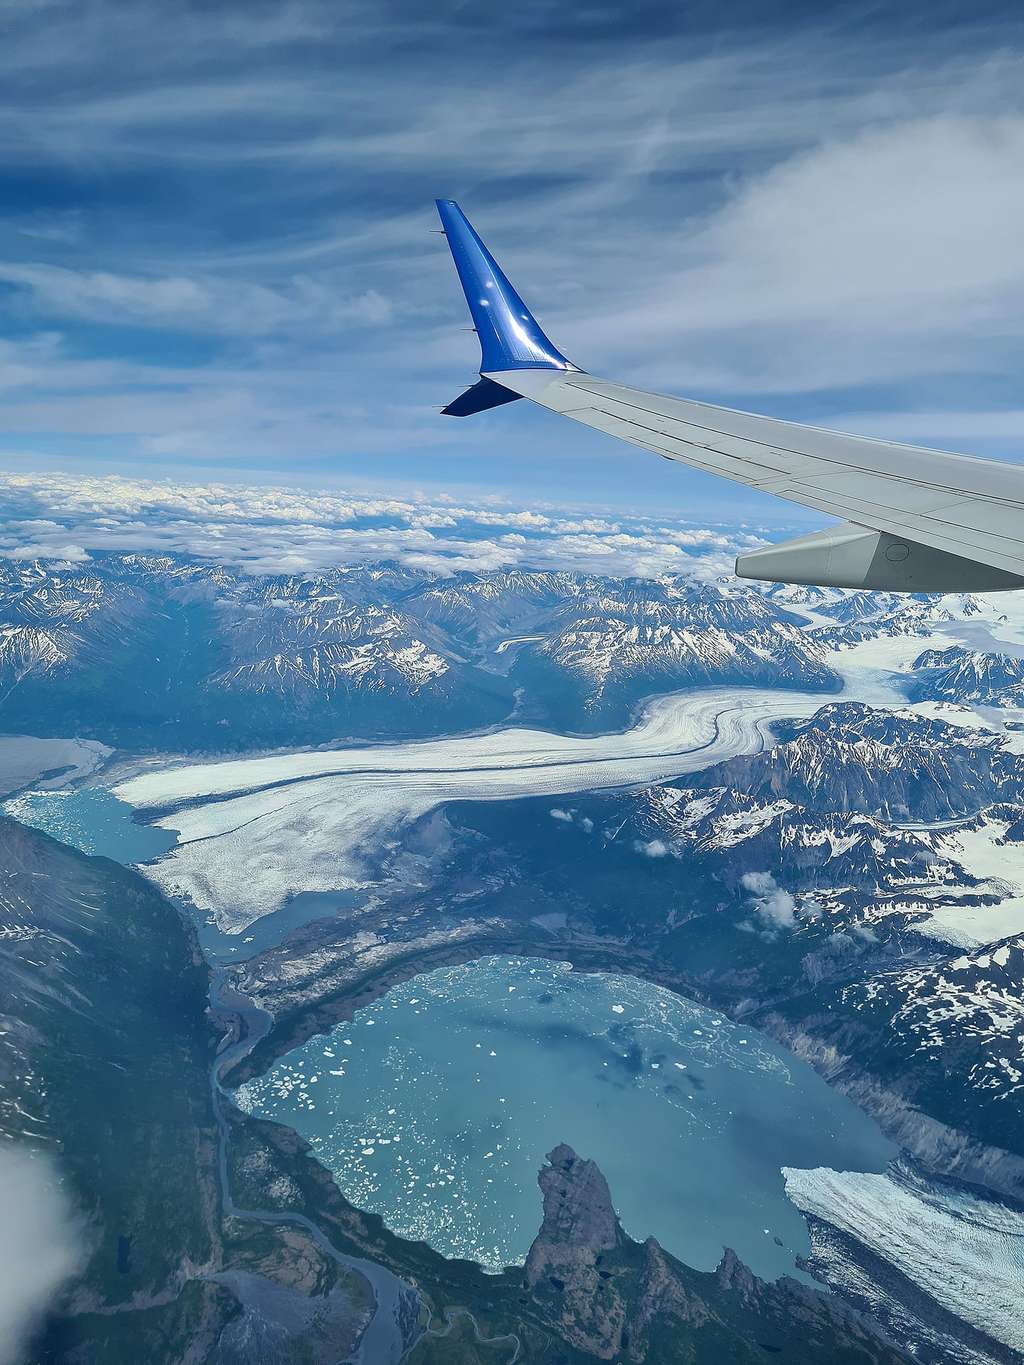 Le sud de l'Alaska, avec ses nombreux glaciers et lacs glaciaires. © Karine Durand